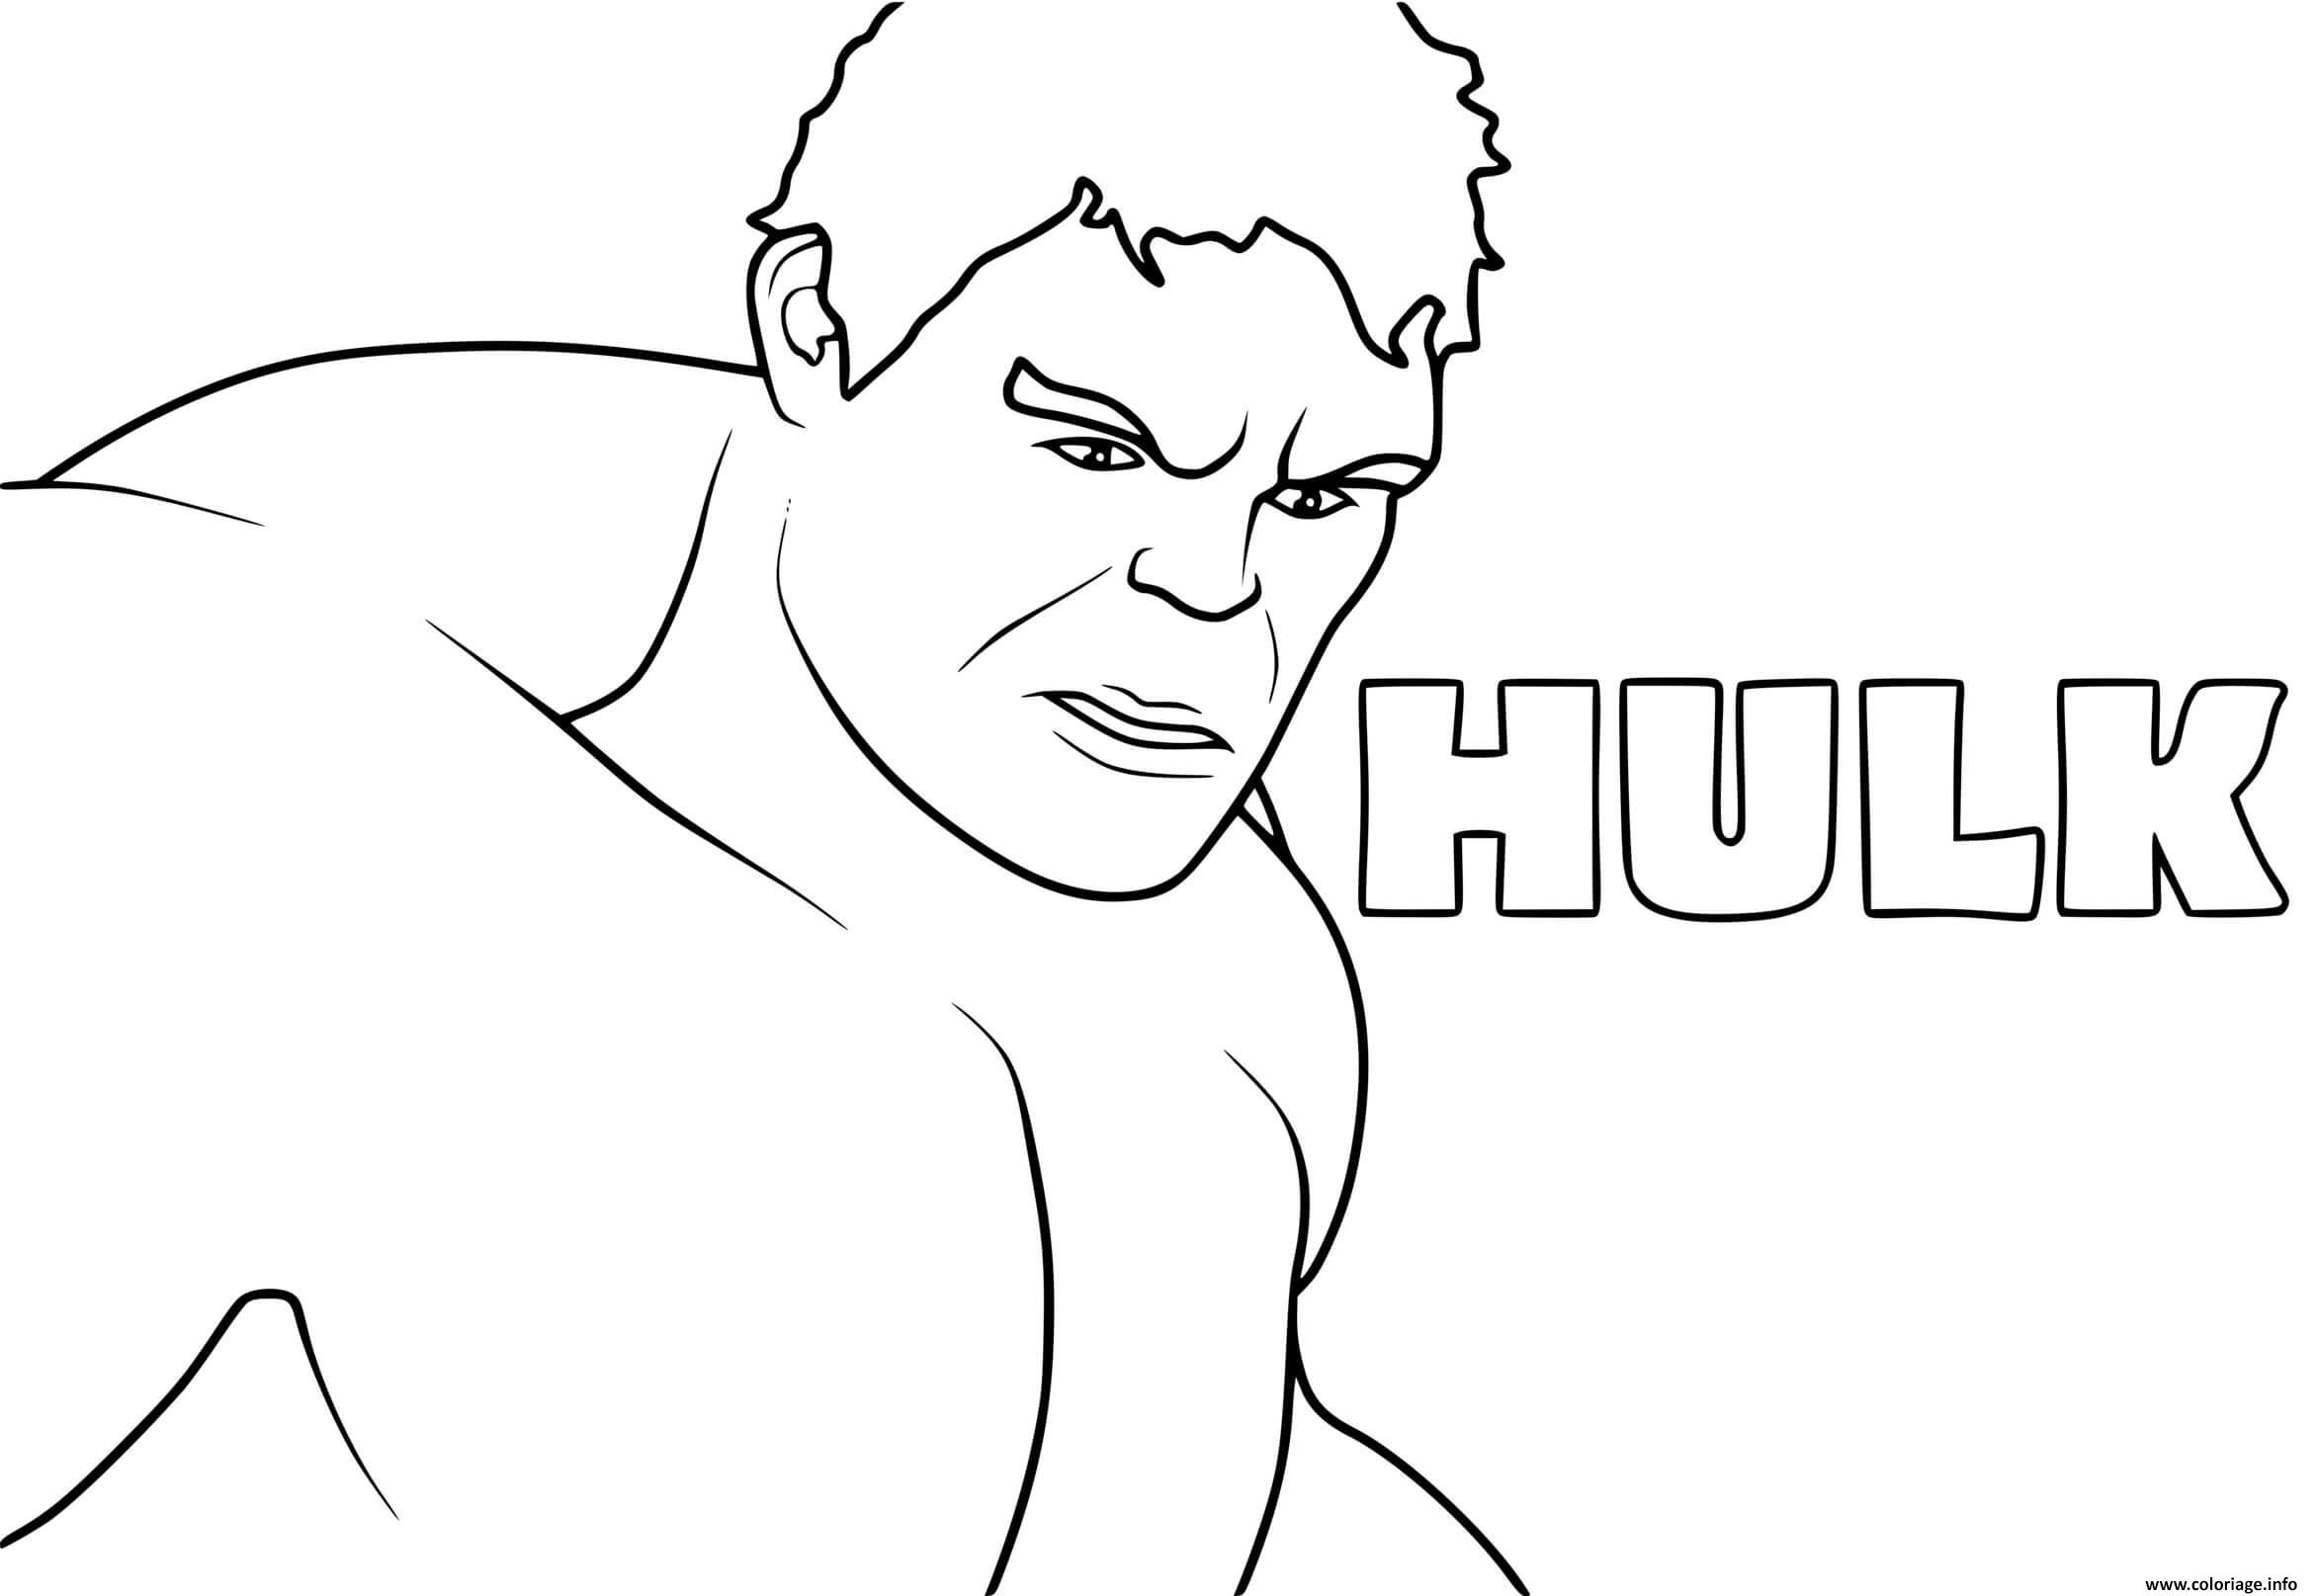 Dessin hulk personnage de fiction Coloriage Gratuit à Imprimer